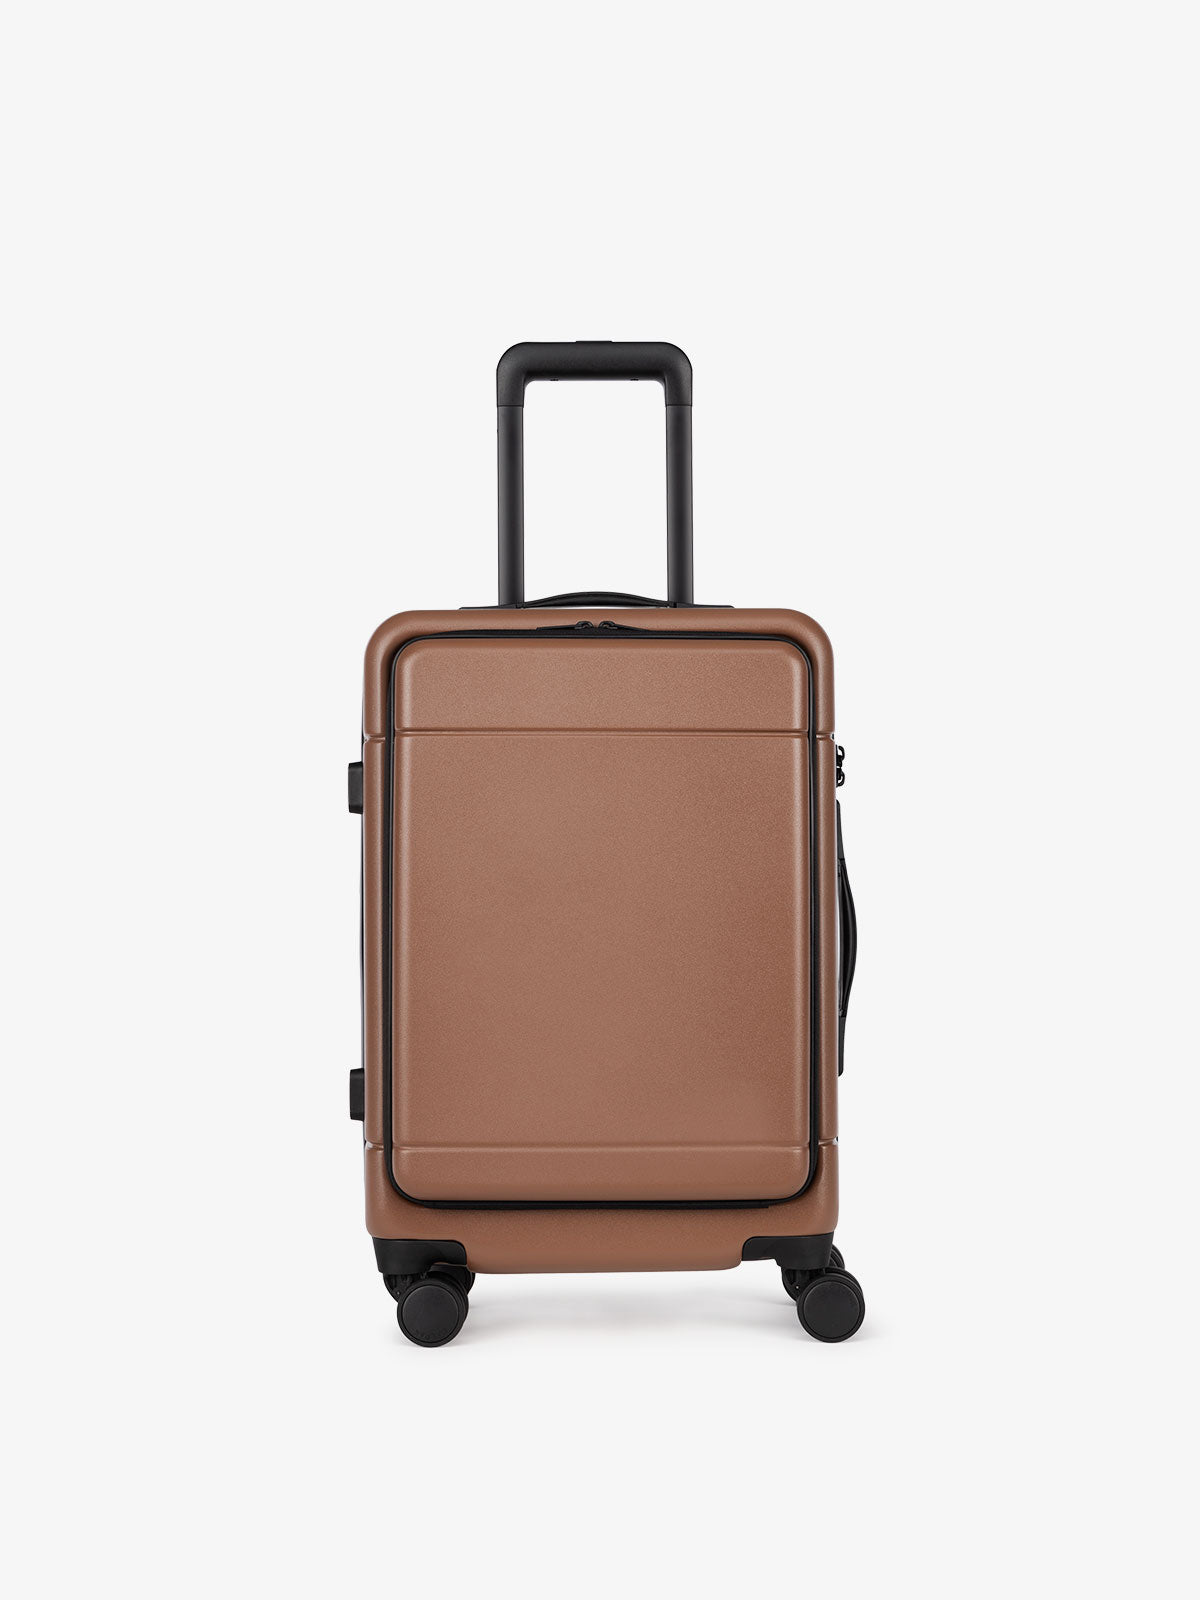 CALPAK Hue hardside carry-on suitcase with laptop pocket in brown hazel color